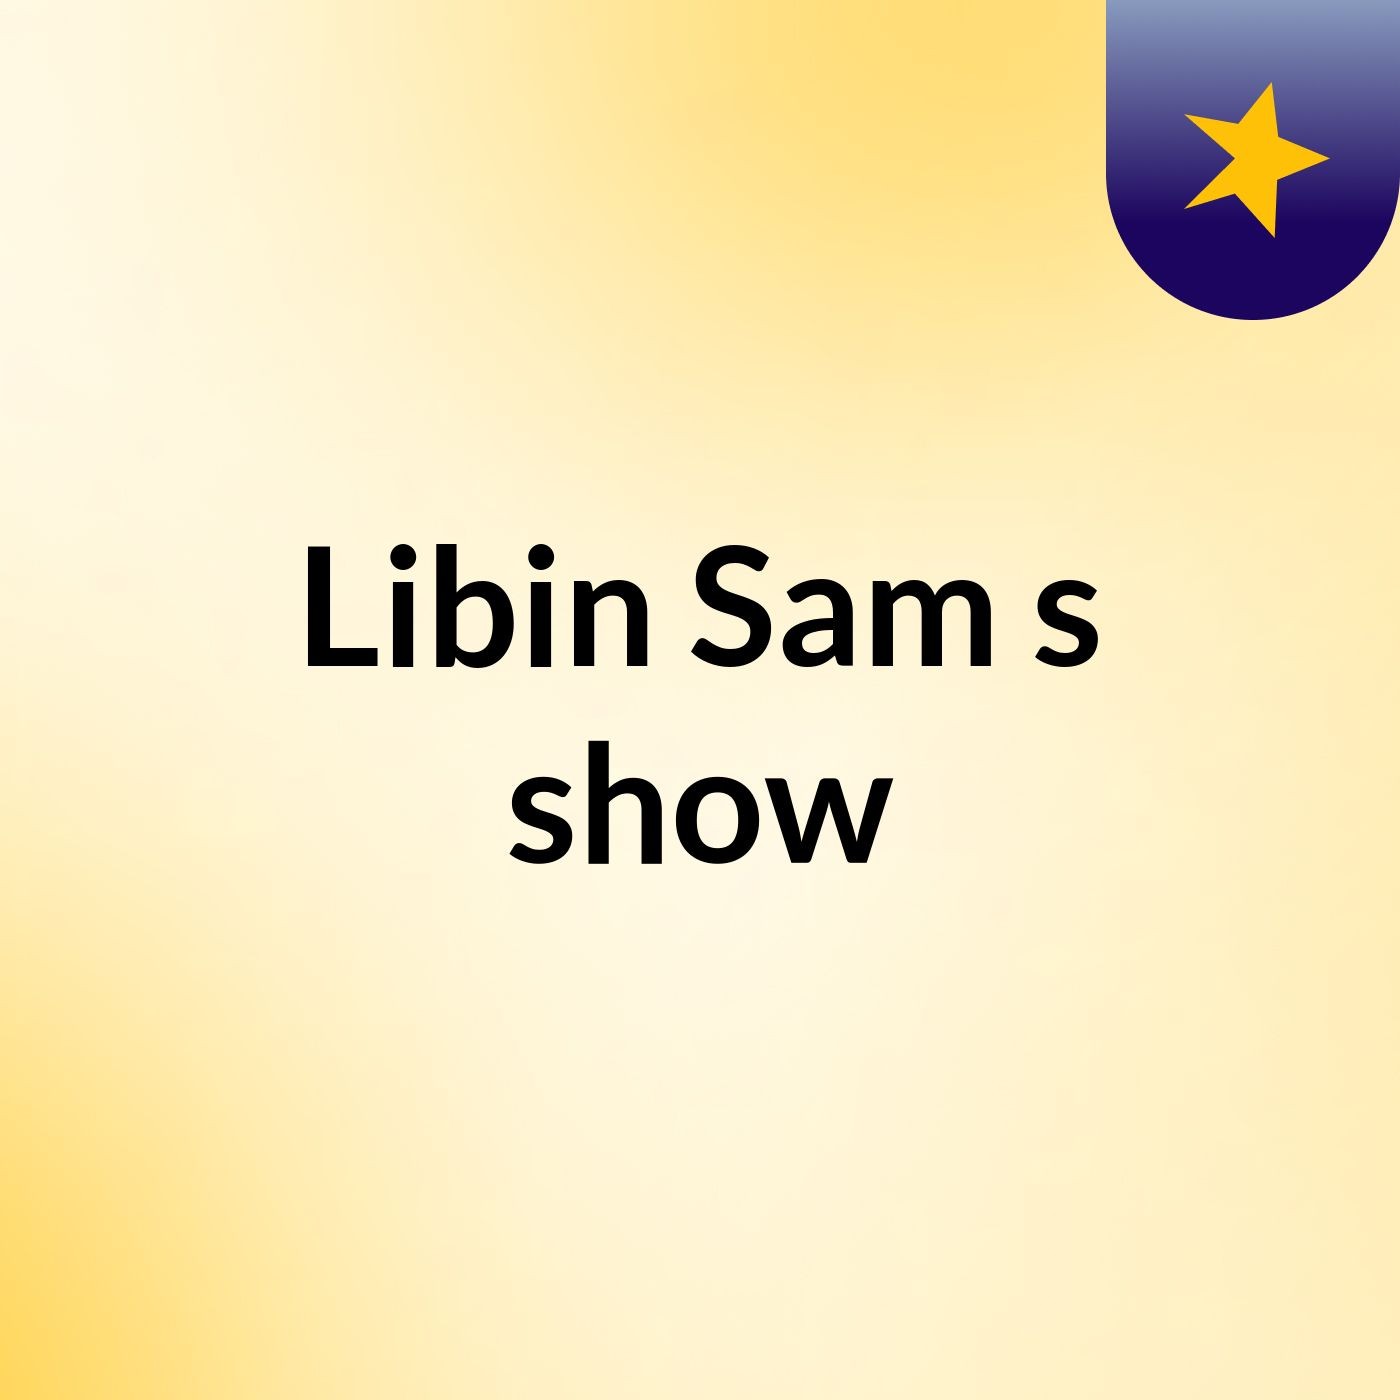 Libin Sam's show